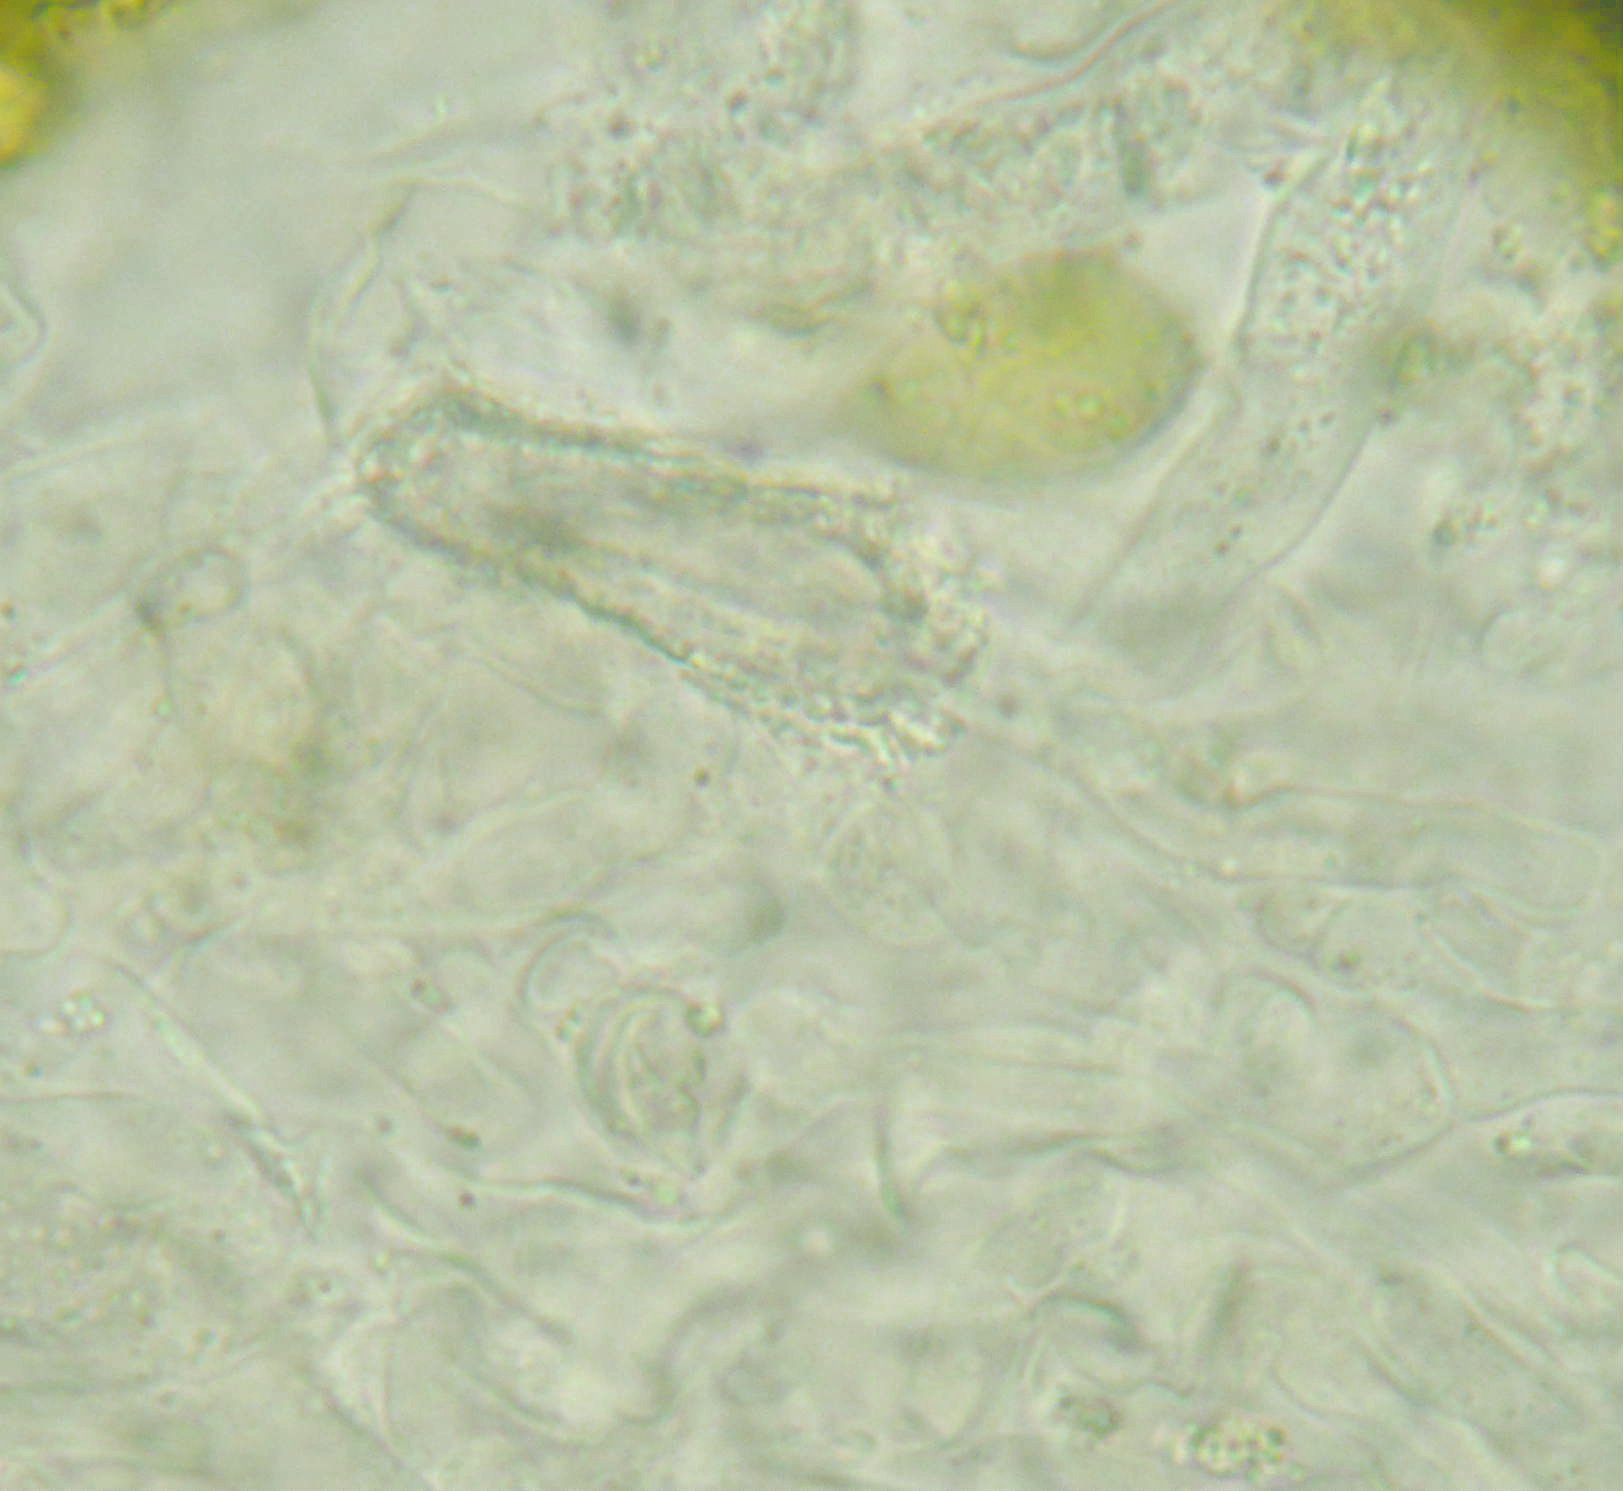 Peniophora aurantiaca? (Peniophora aurantiaca)